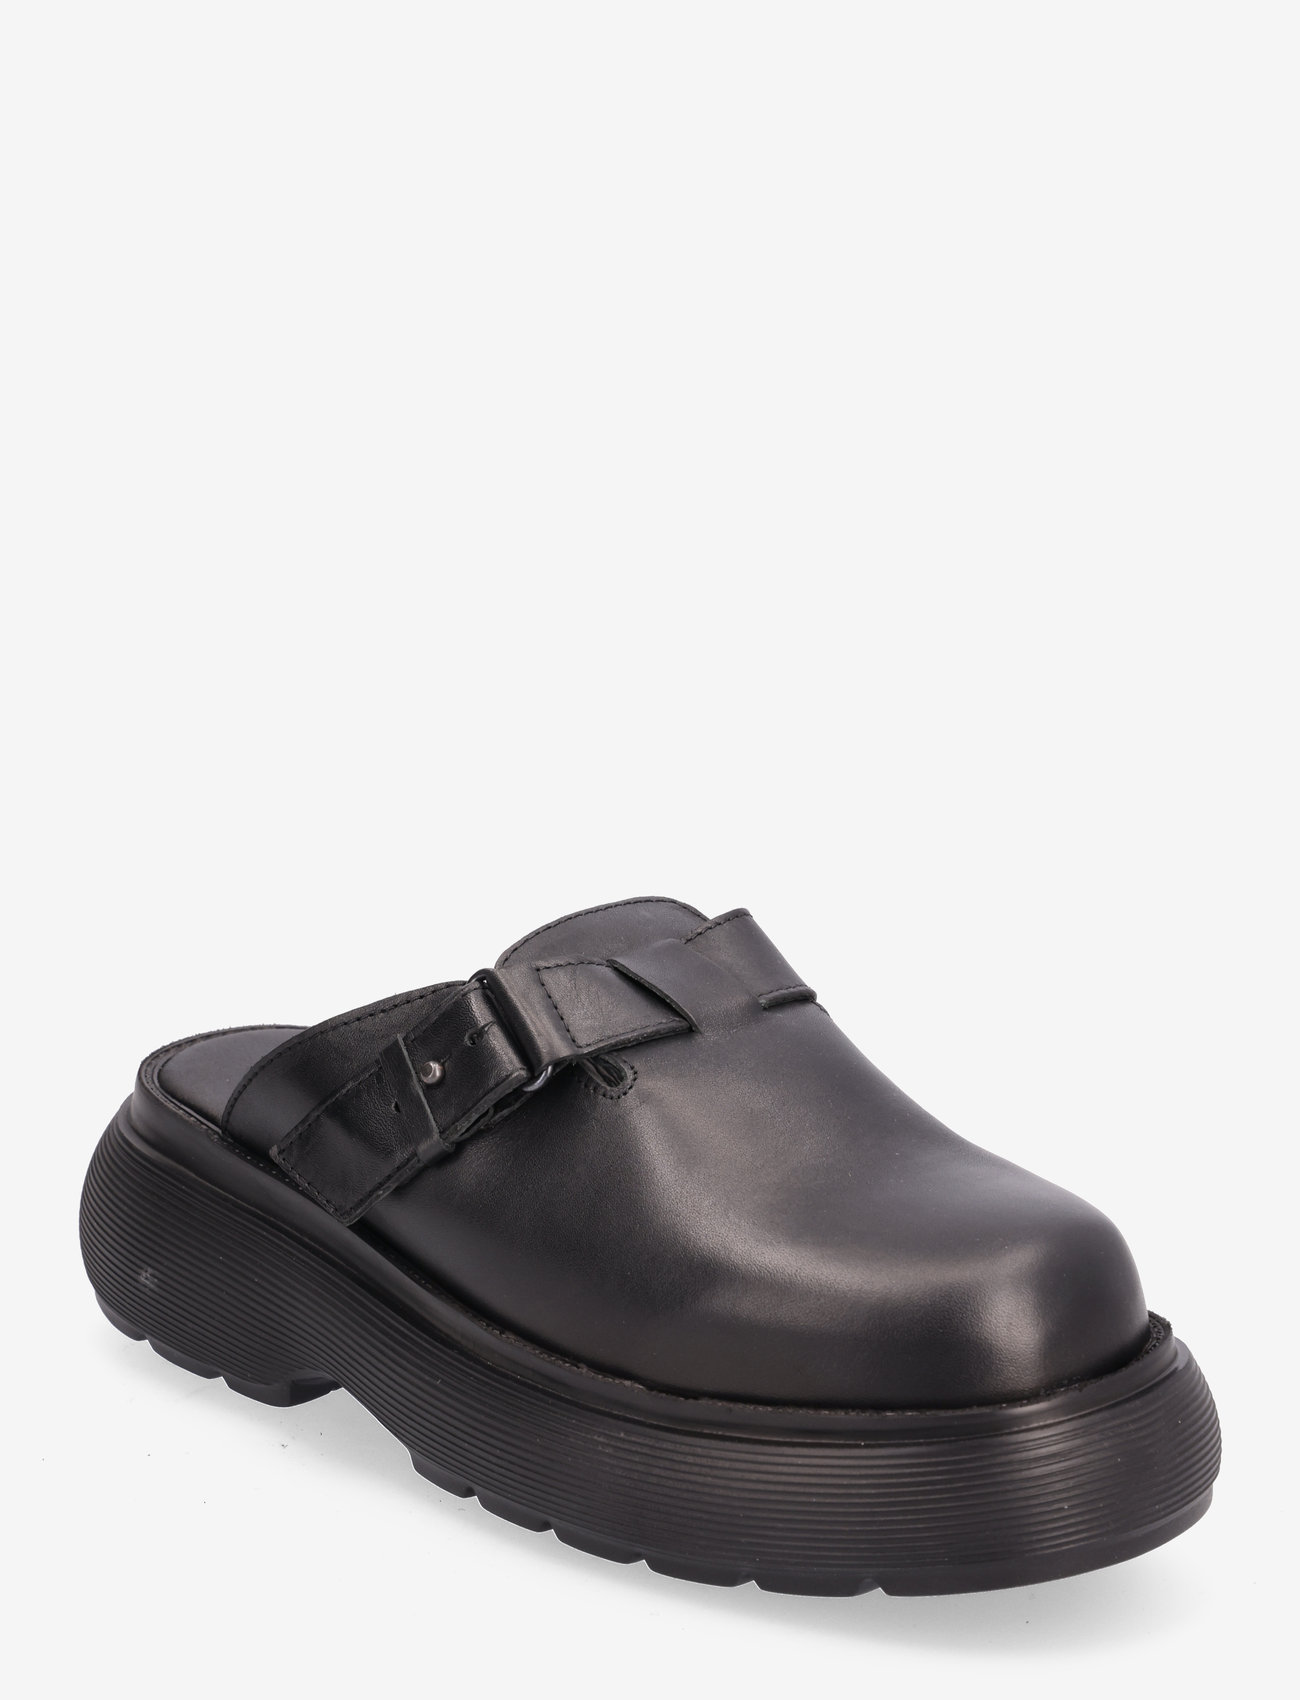 Garment Project - Cloud Clog - Black Leather - flache pantoletten - black - 0